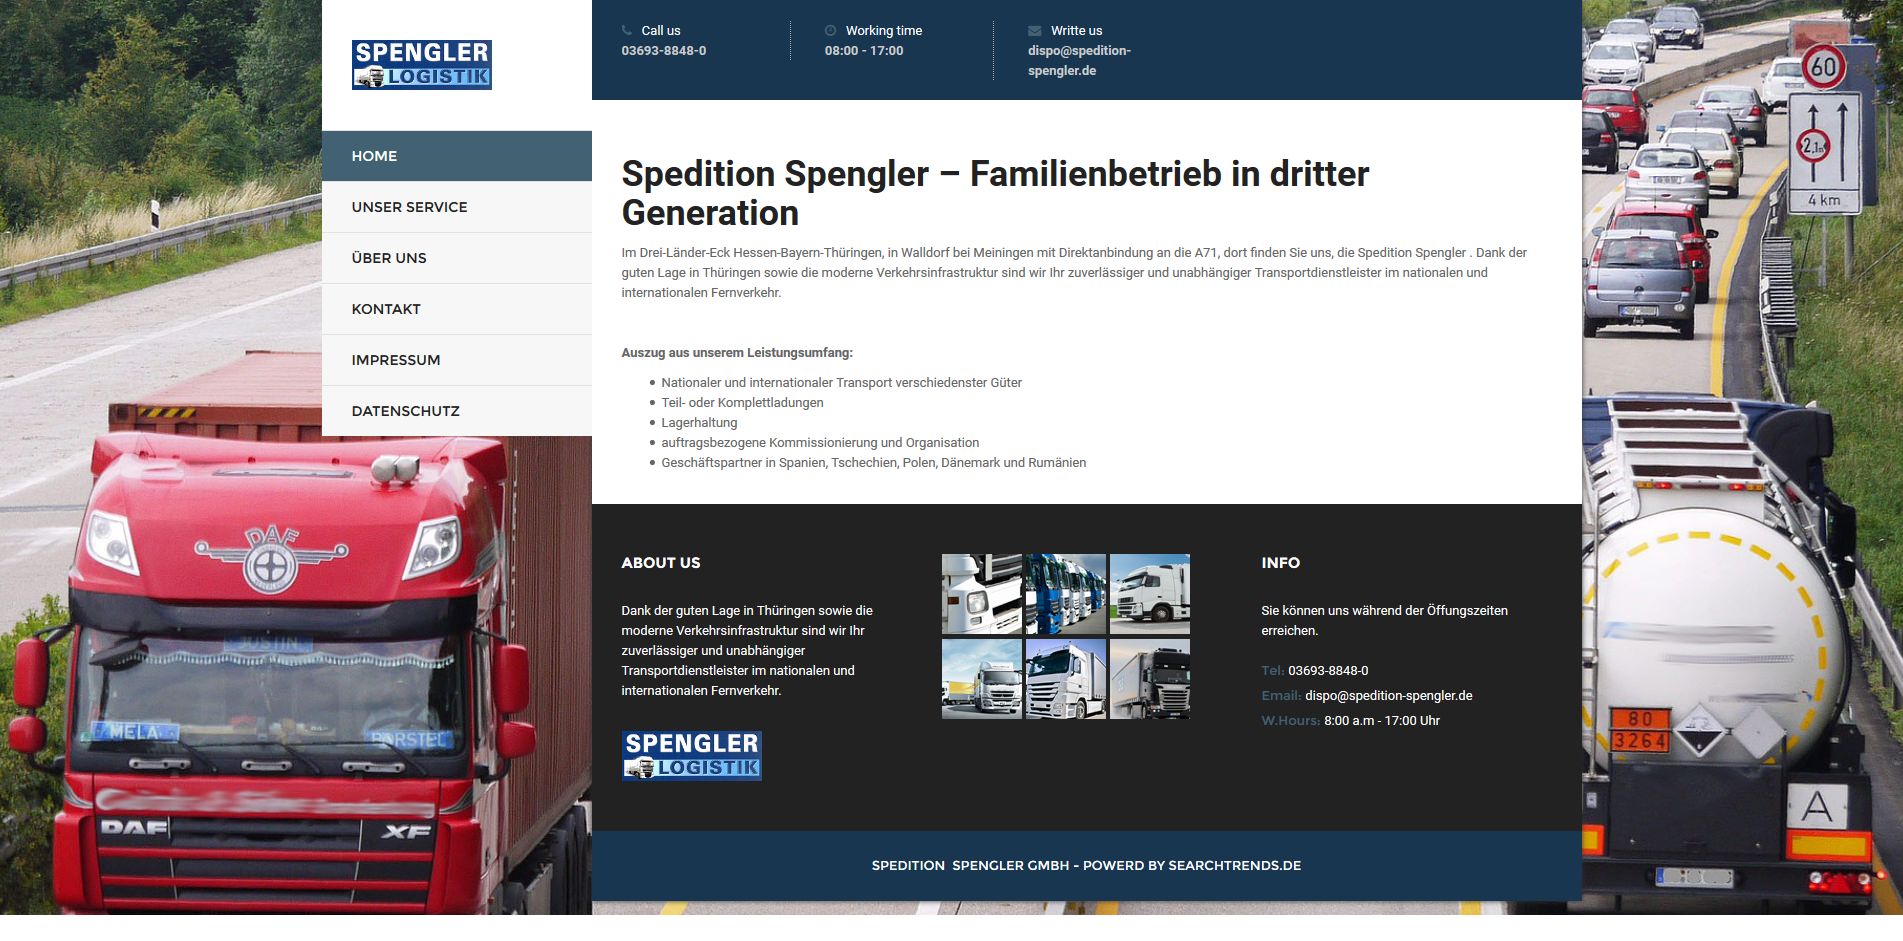 SPEDITION SPENGLER GmbH